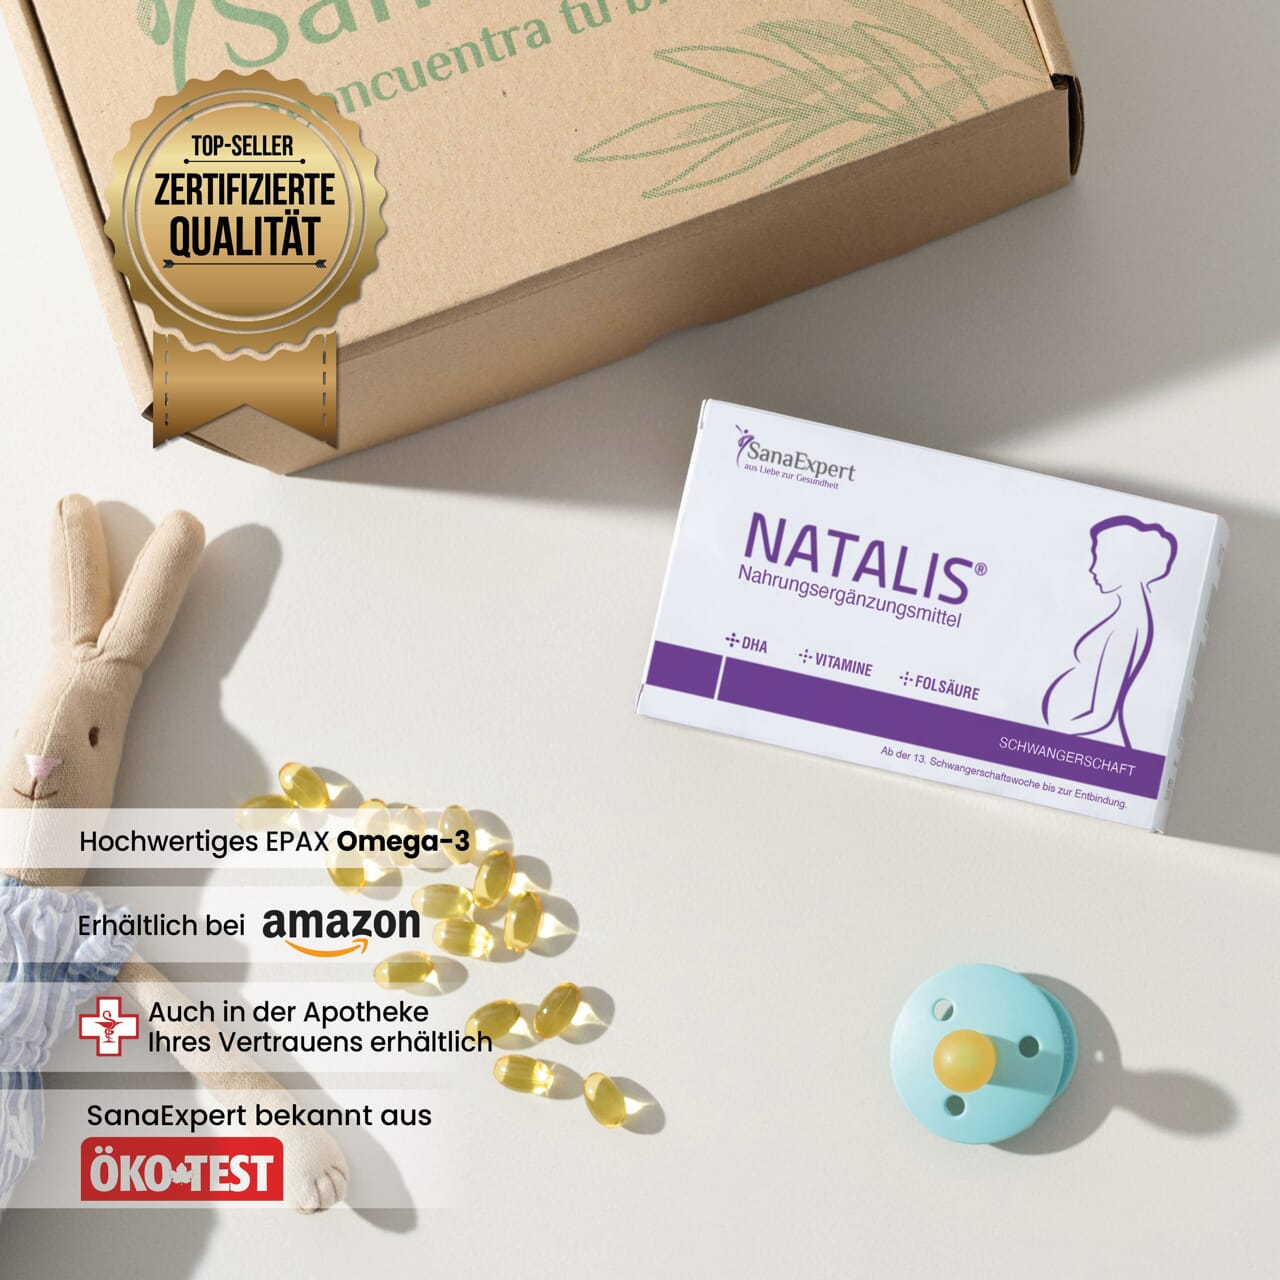 Natalis Verpackung neben einem Qualitätszertifikat und kindlicher Deko, inklusive Holzspielzeug und Schnuller.